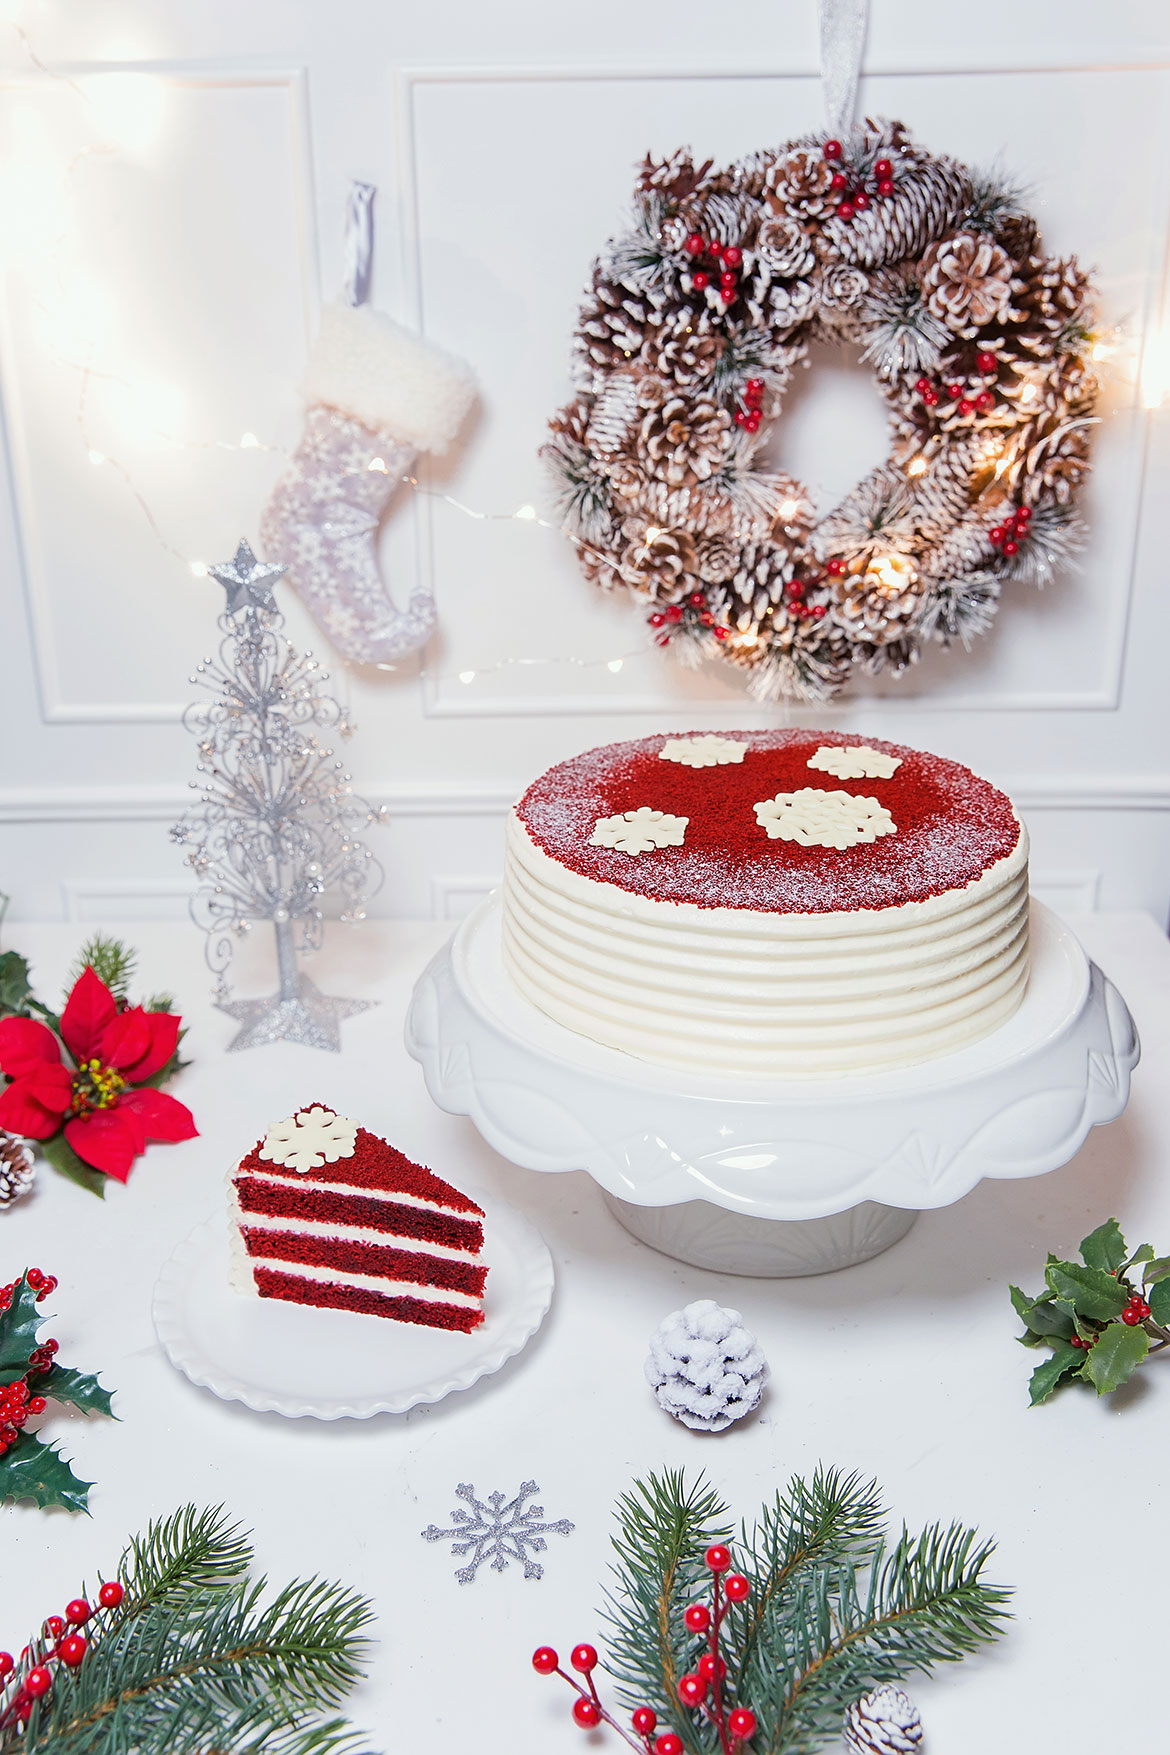 抱一個回家過聖誕 : Lady M 推出12月限定特別版「紅絲絨蛋糕」 1